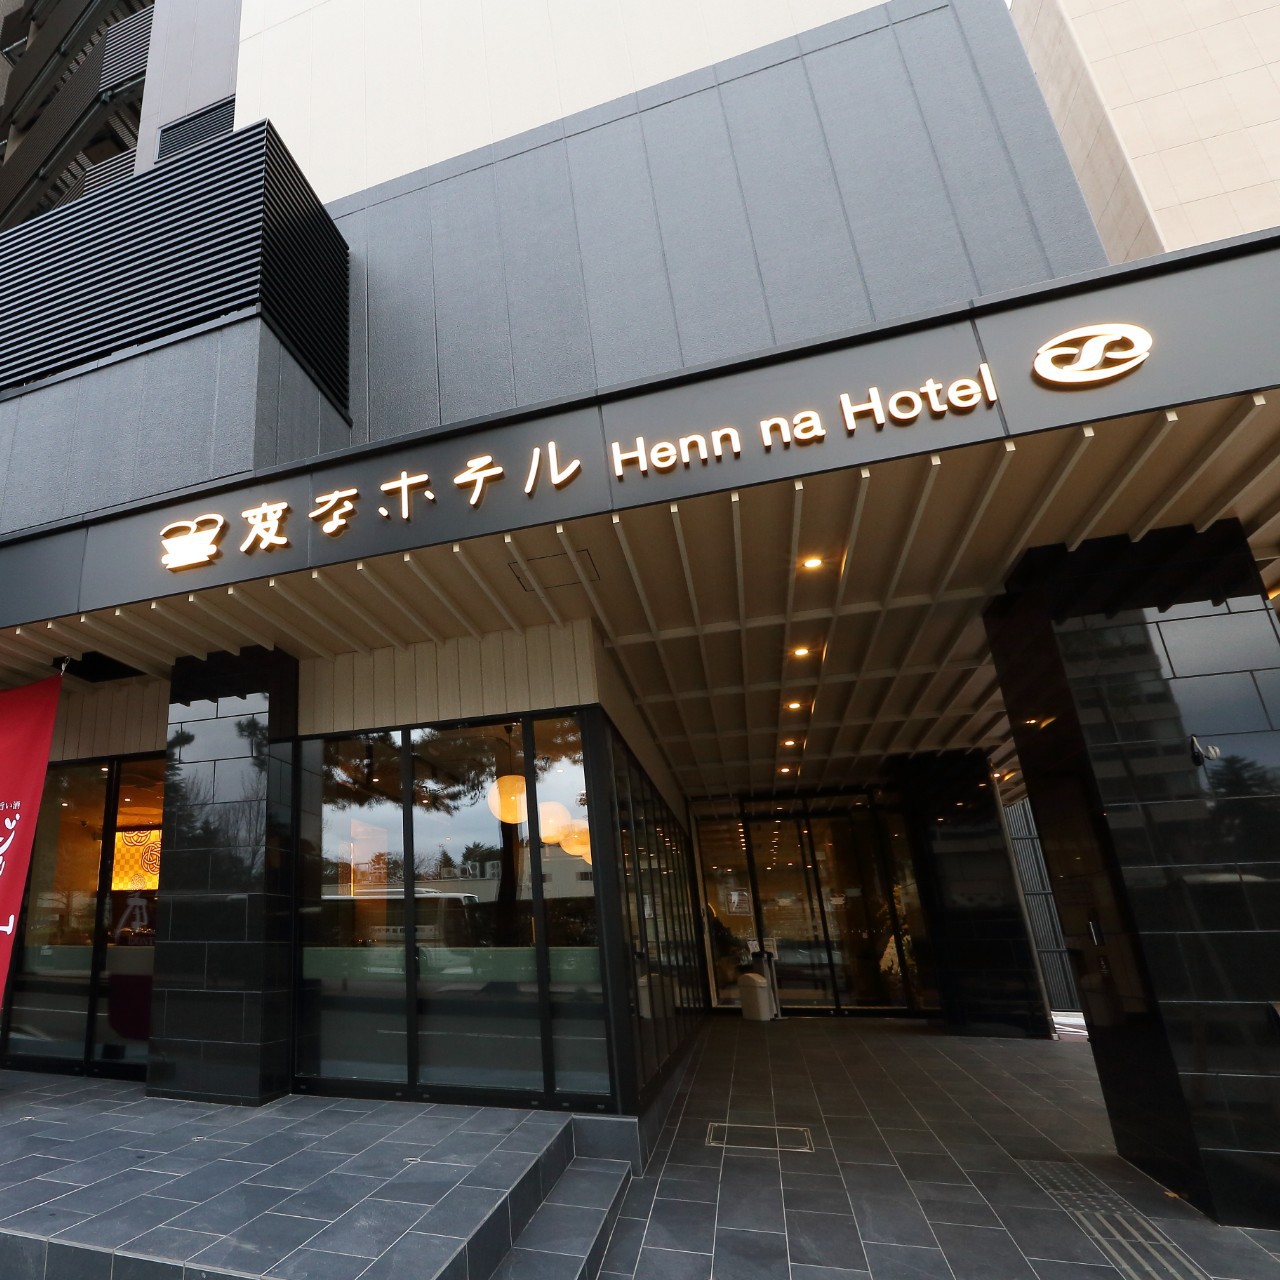 金沢市周辺のホテル 格安予約 宿泊料金比較 検索 トラベルコ